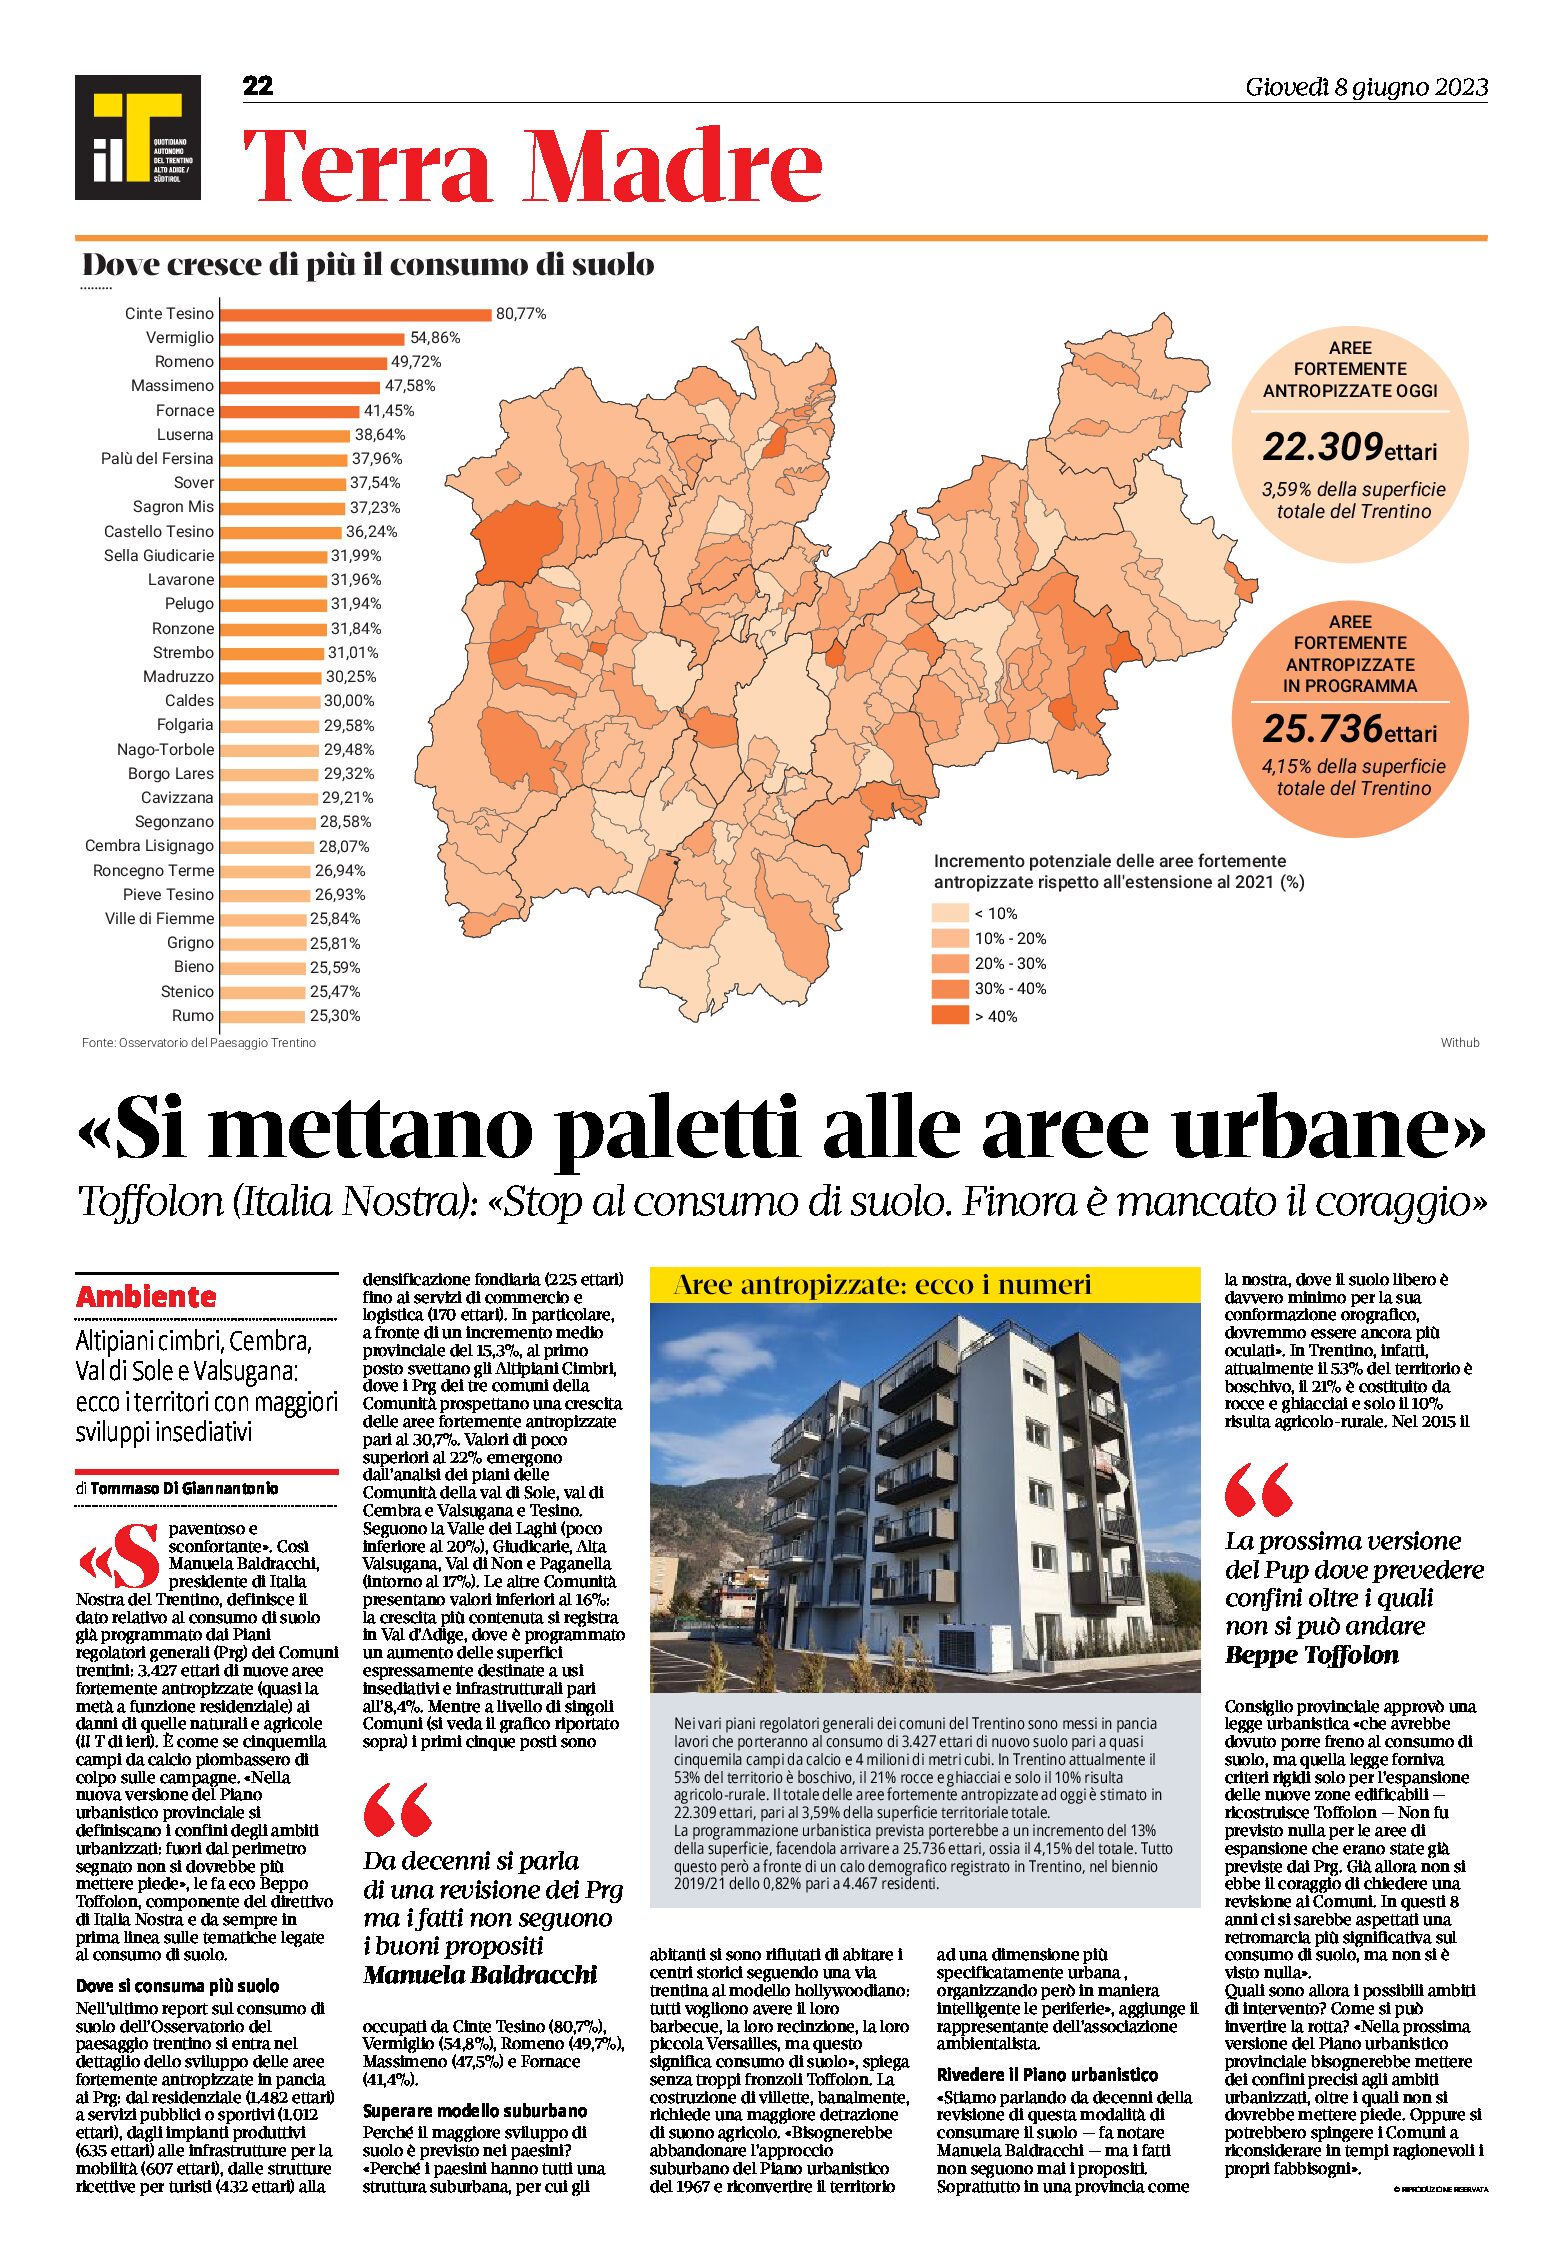 Trentino: dove cresce di più il consumo di suolo. Intervista a Italia Nostra (Baldracchi e Toffolon)